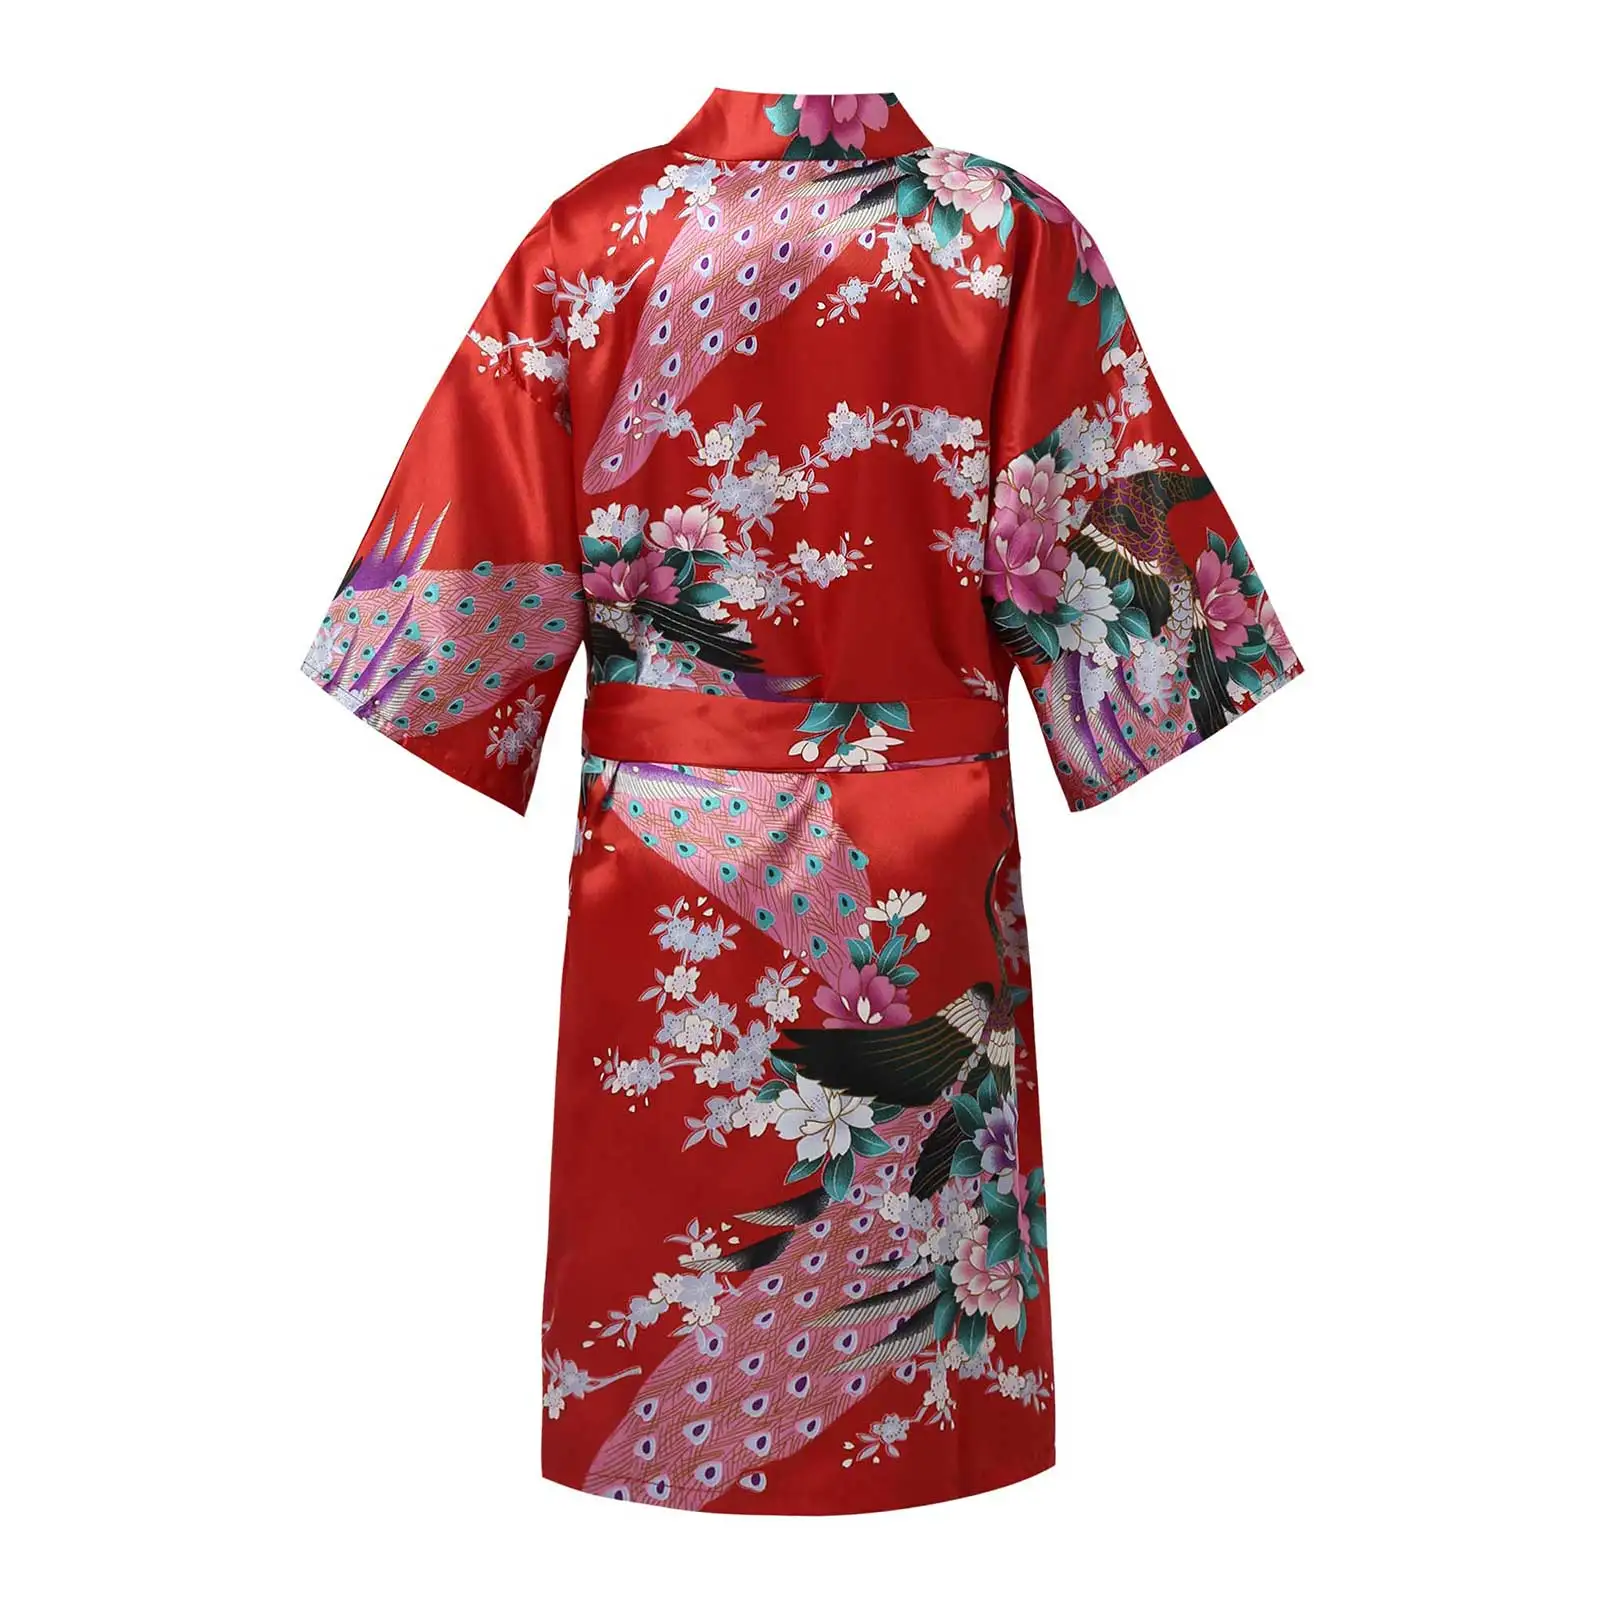 Děti dívčí japonský night-gowns páv kvést potištěné falešný satén kimono róba župan noční košile pro lázeňského večírek svatební narozeniny